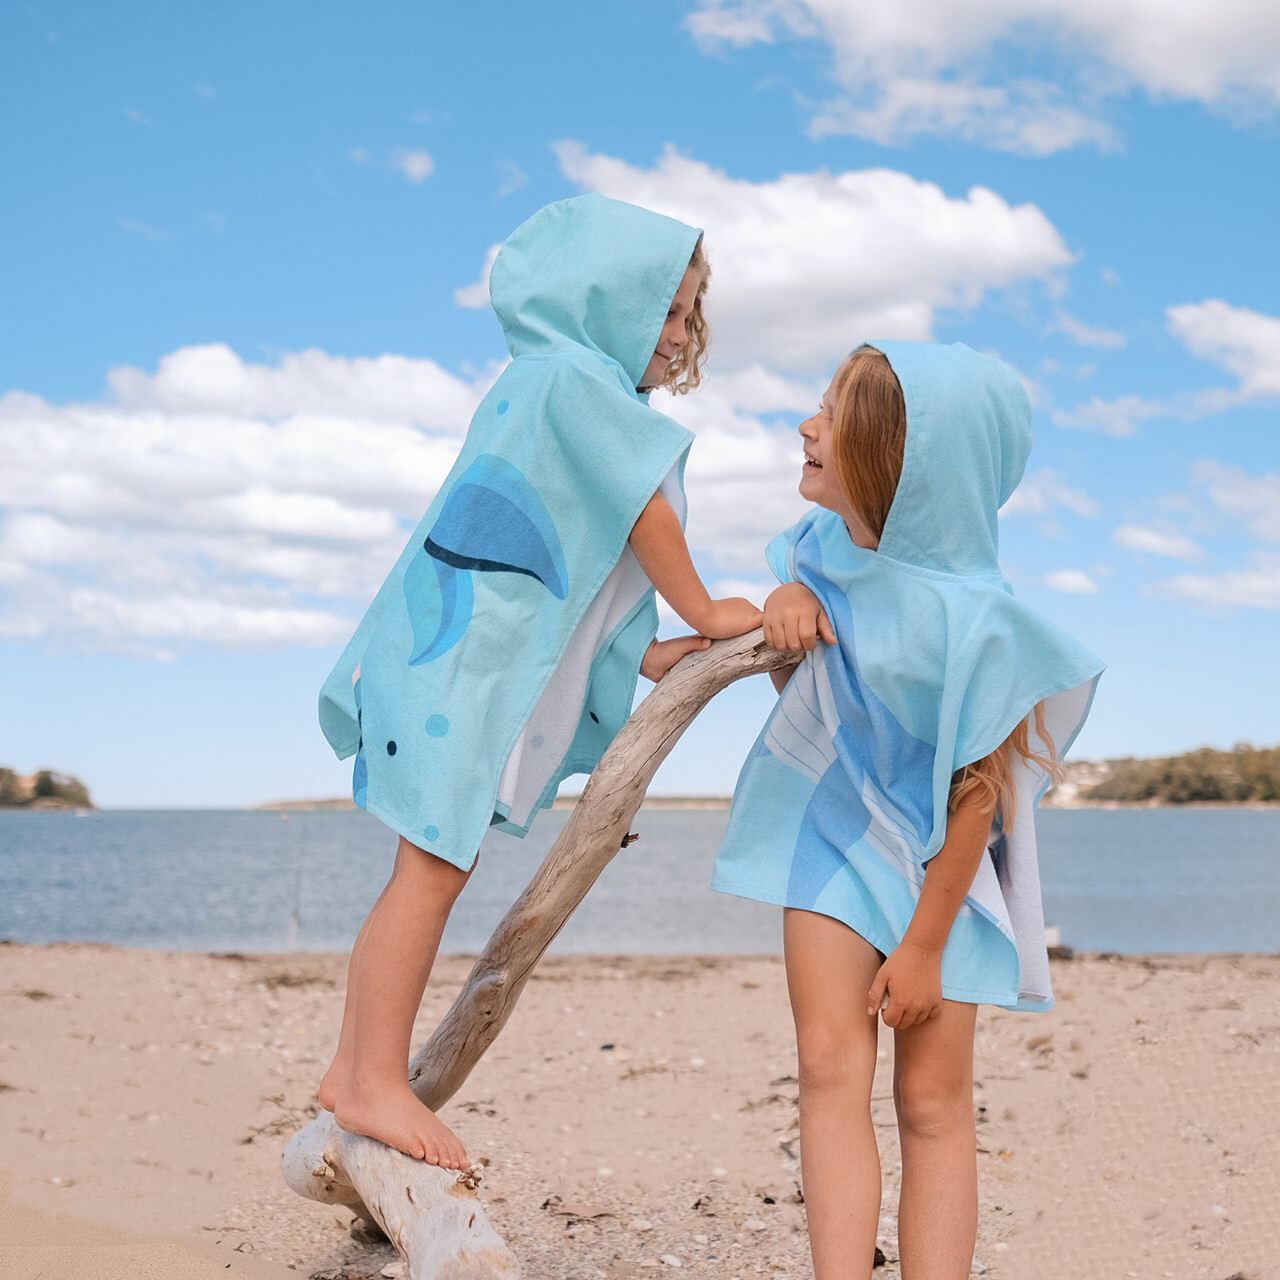 Capresi Kids' Hooded Beach Towel - Whale